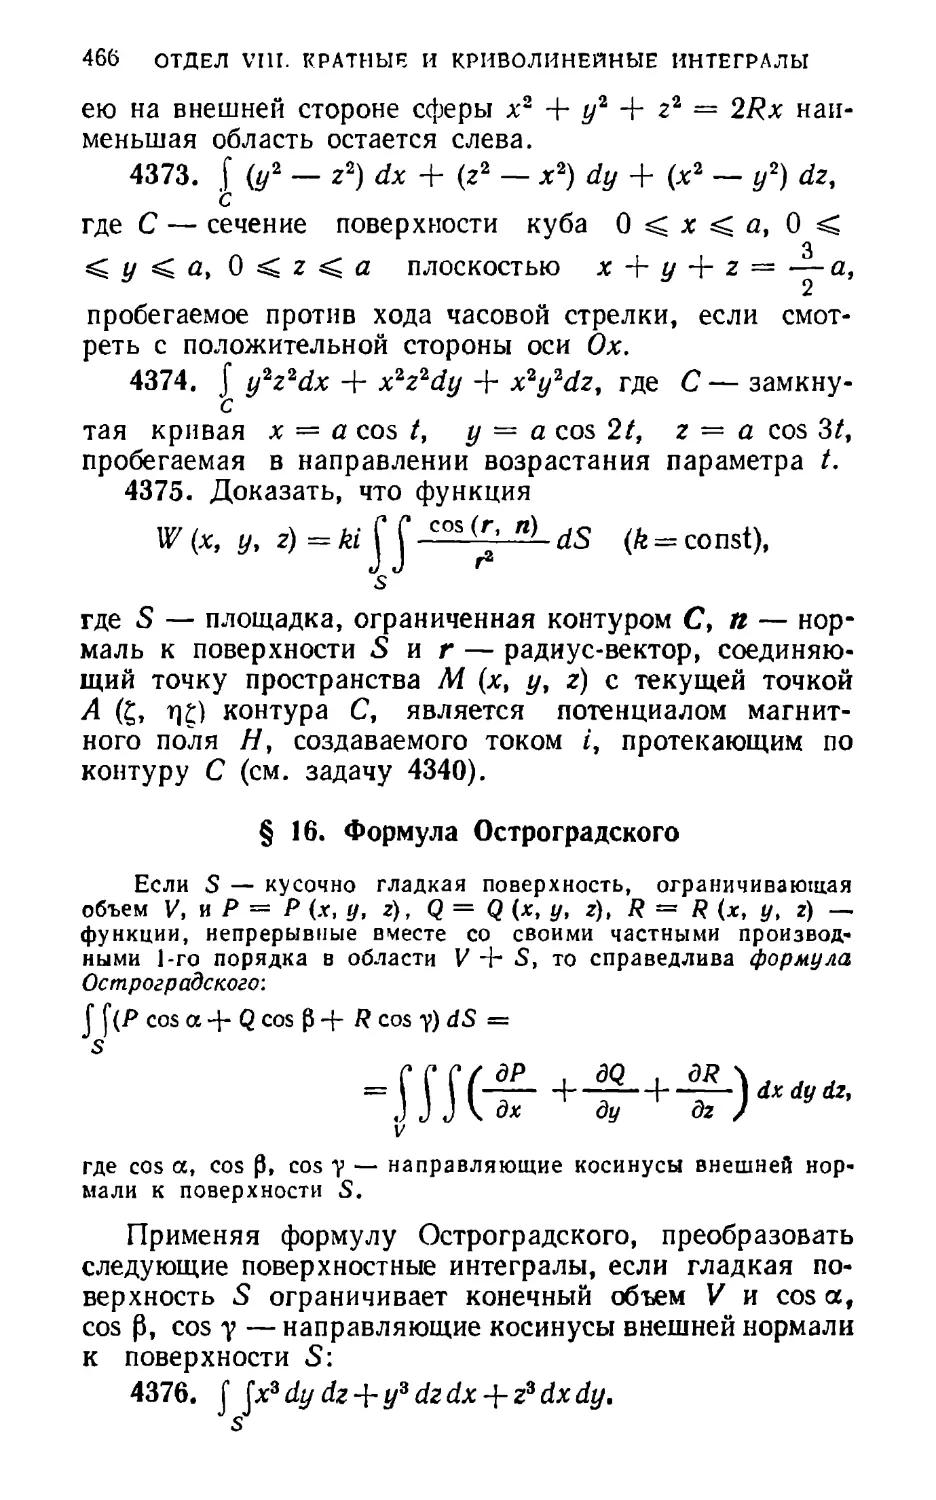 § 16. Формула Остроградского